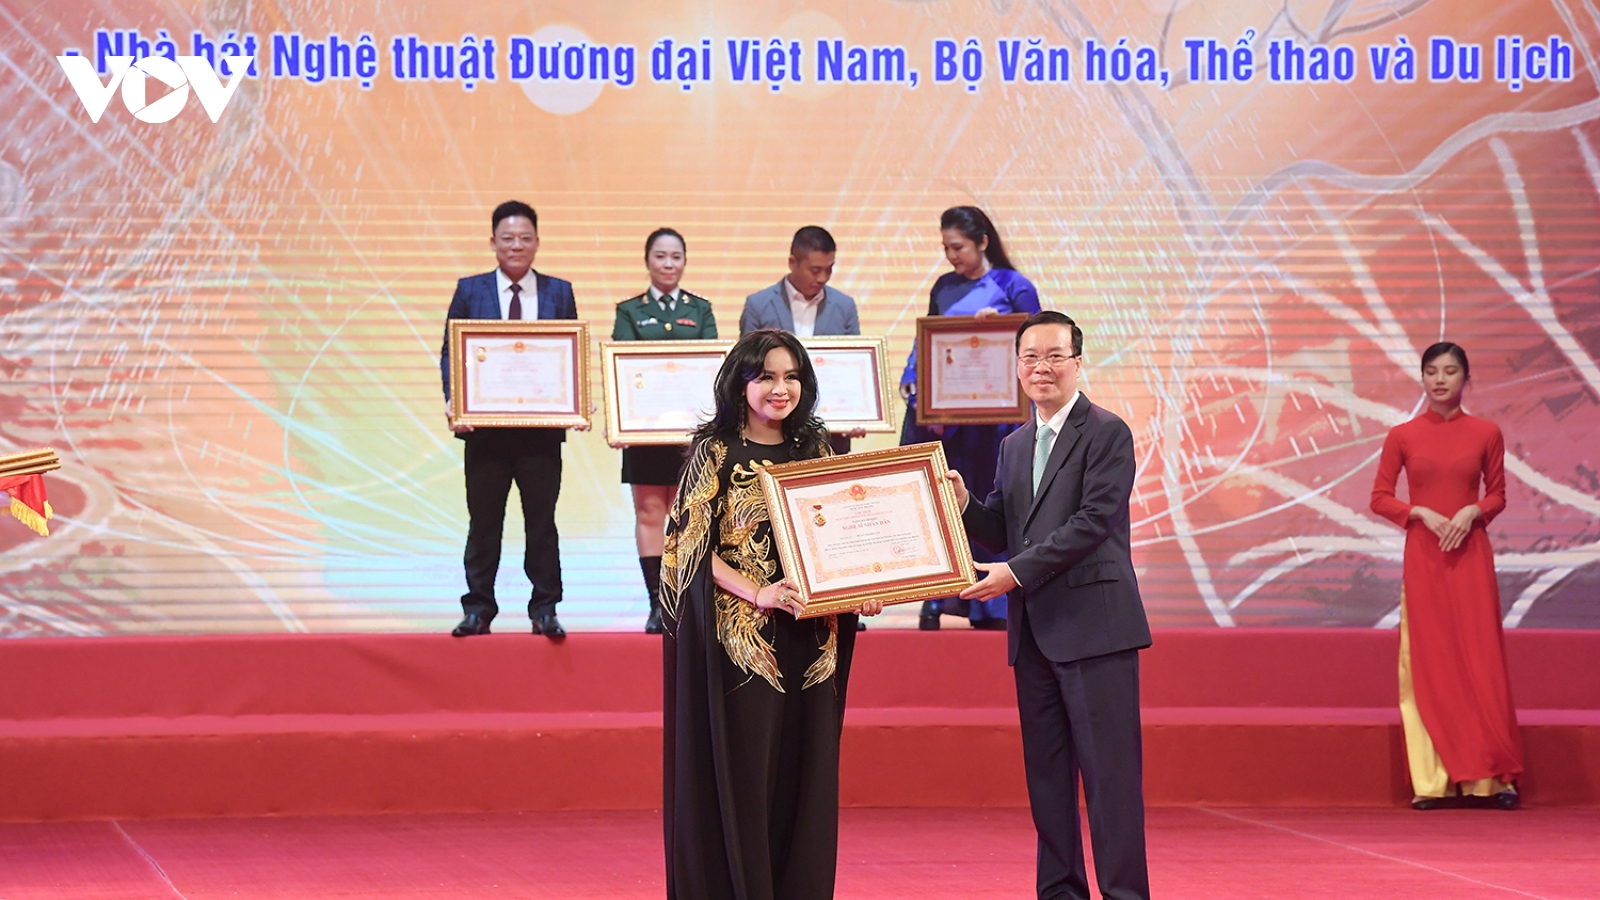 Diva Thanh Lam: “Danh hiệu NSND là món quà tôi dành tặng ông xã”